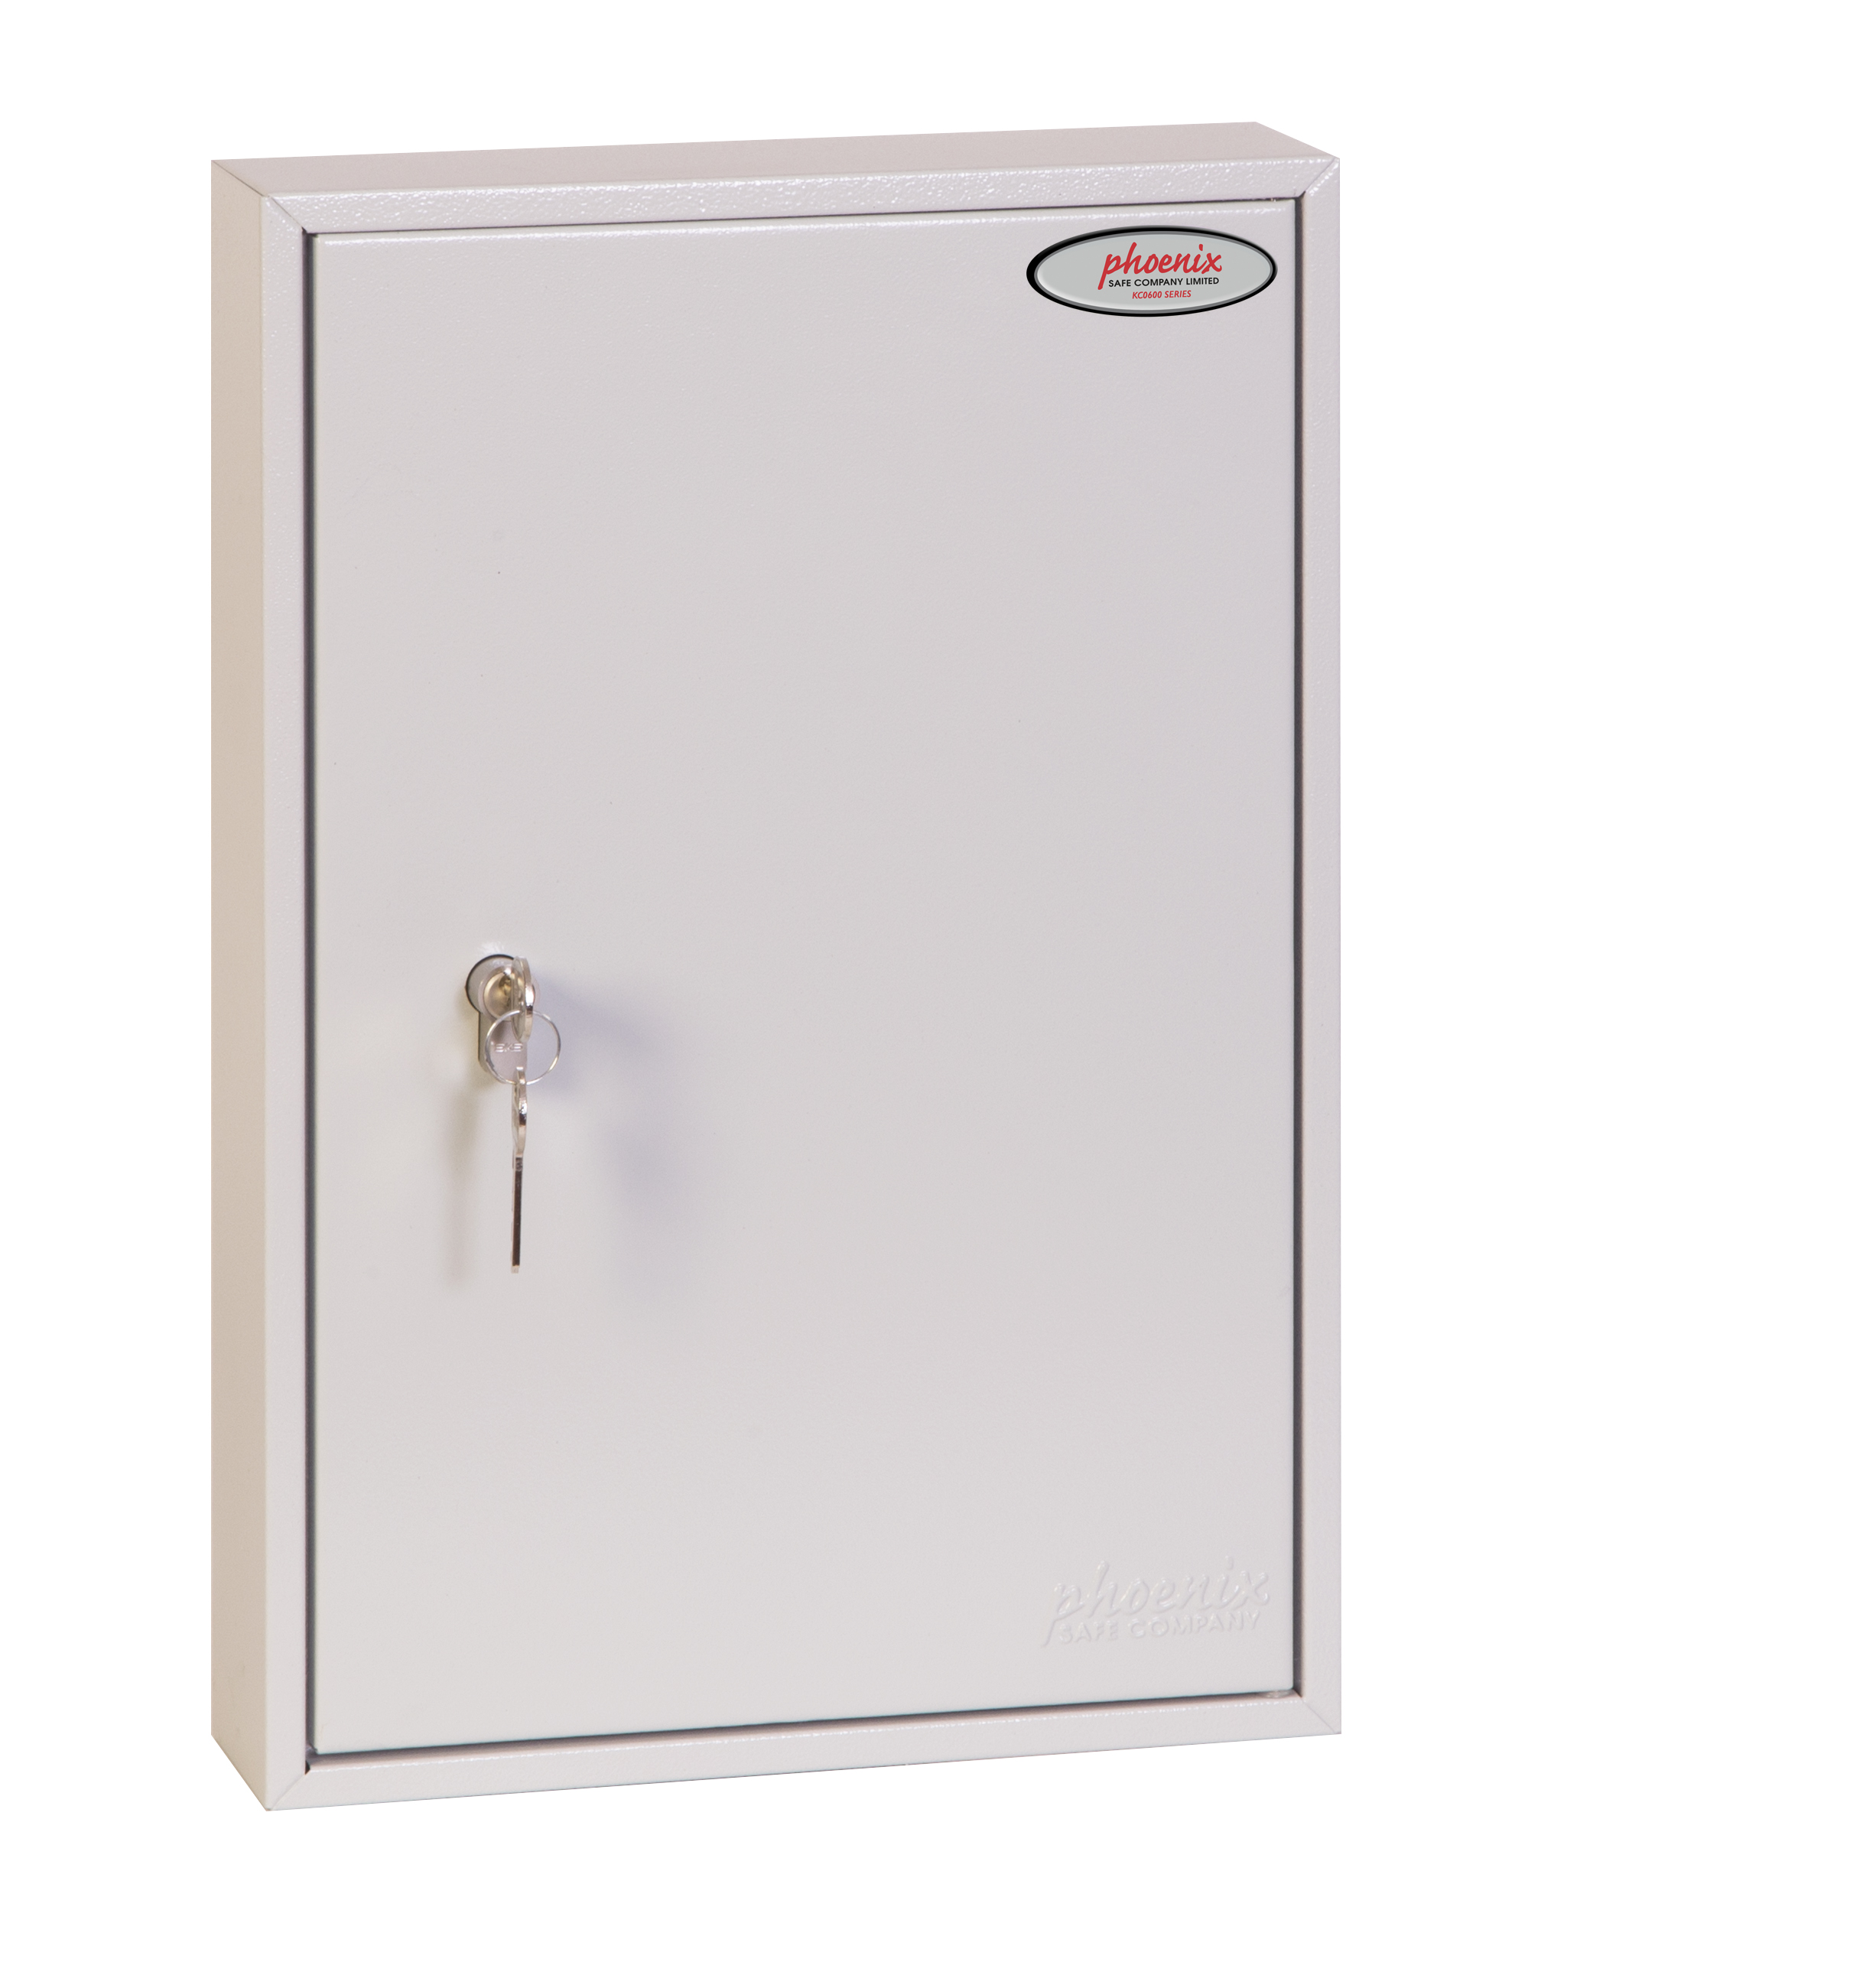 Commercial Key Cabinet Kc0602p Phoenix Safe